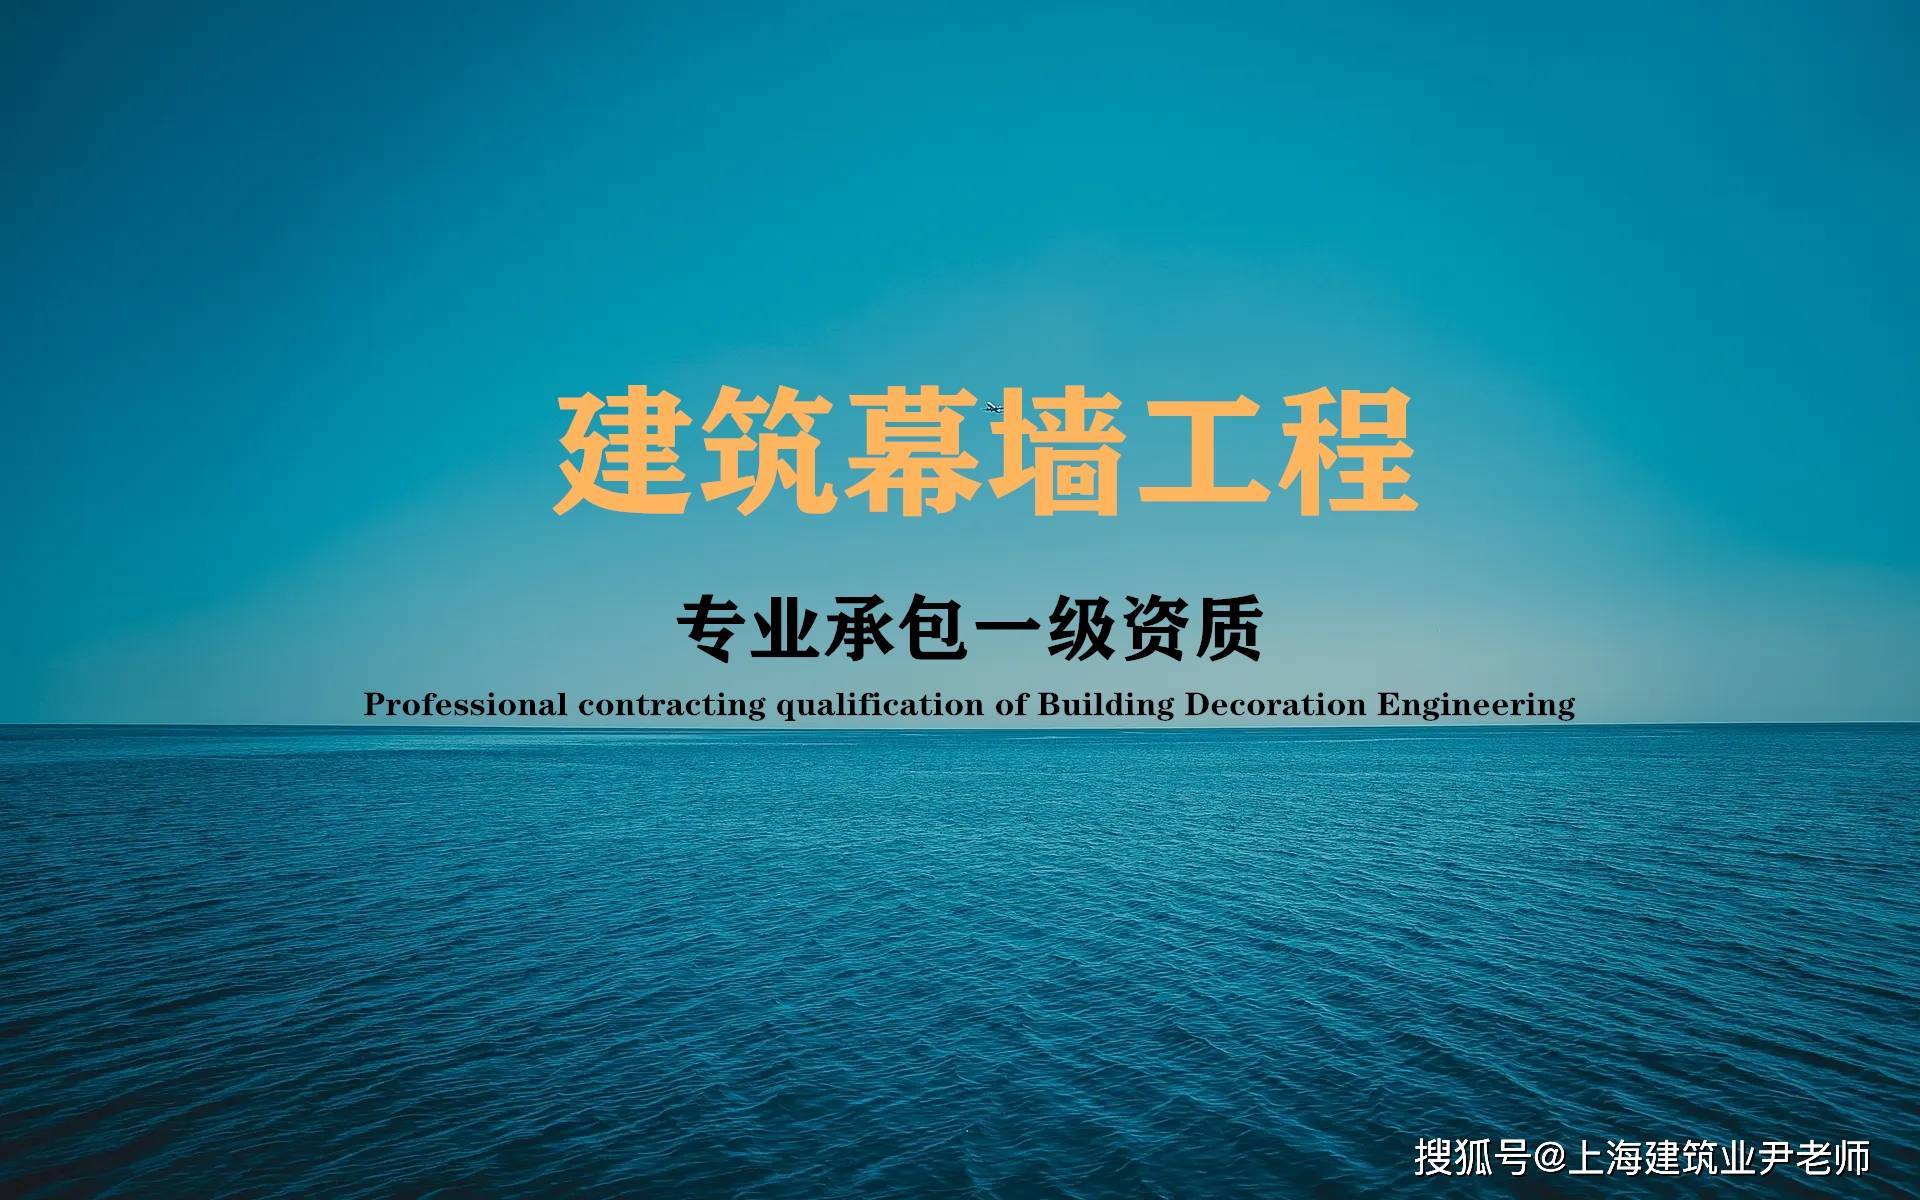 上海幕墙工程一级资质如何吸收到自己单位